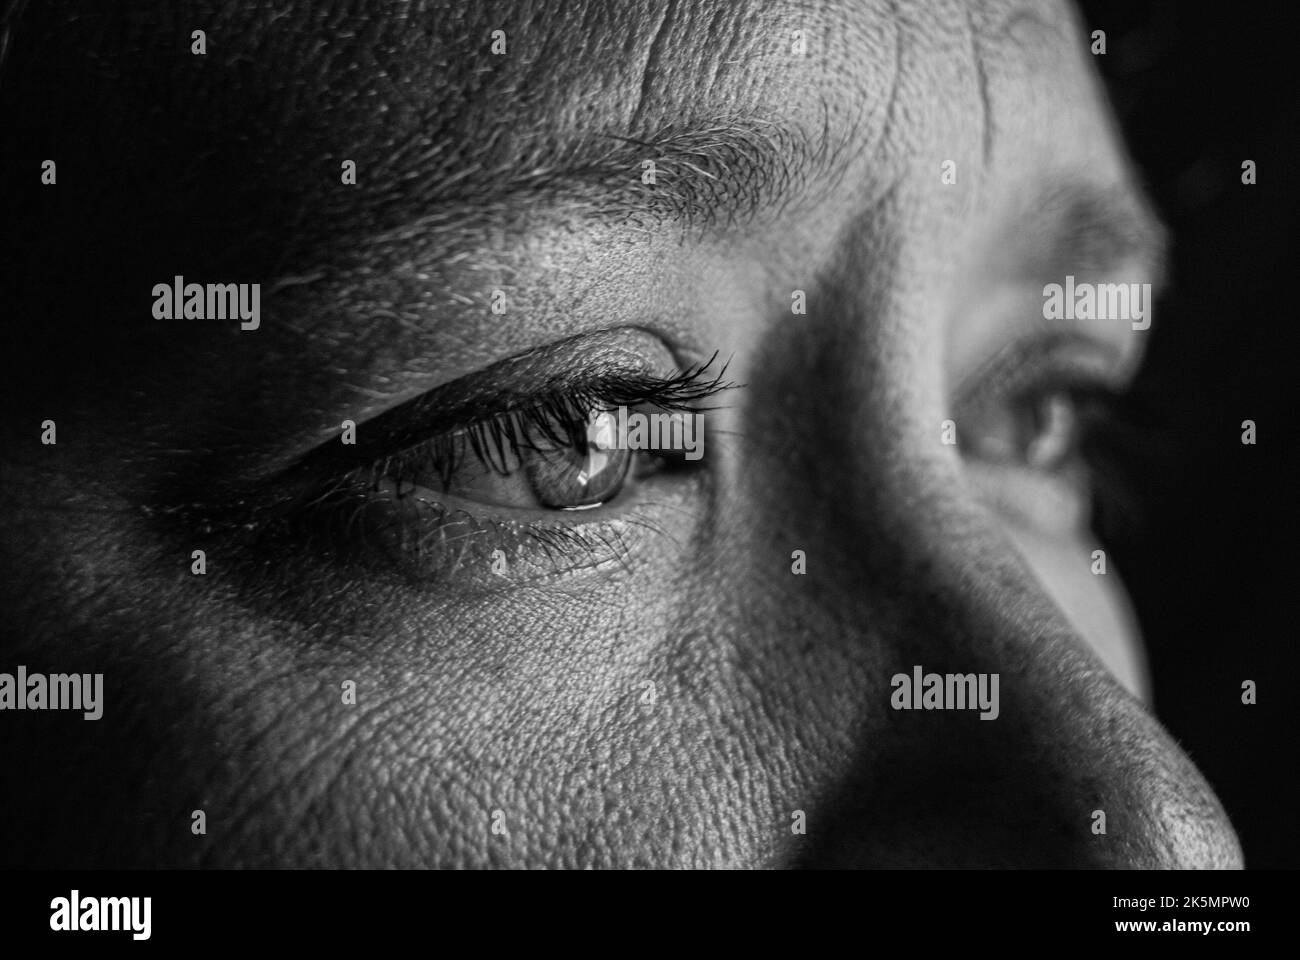 Un gros plan en échelle de gris des yeux d'une femme avec des larmes dans ses yeux Banque D'Images